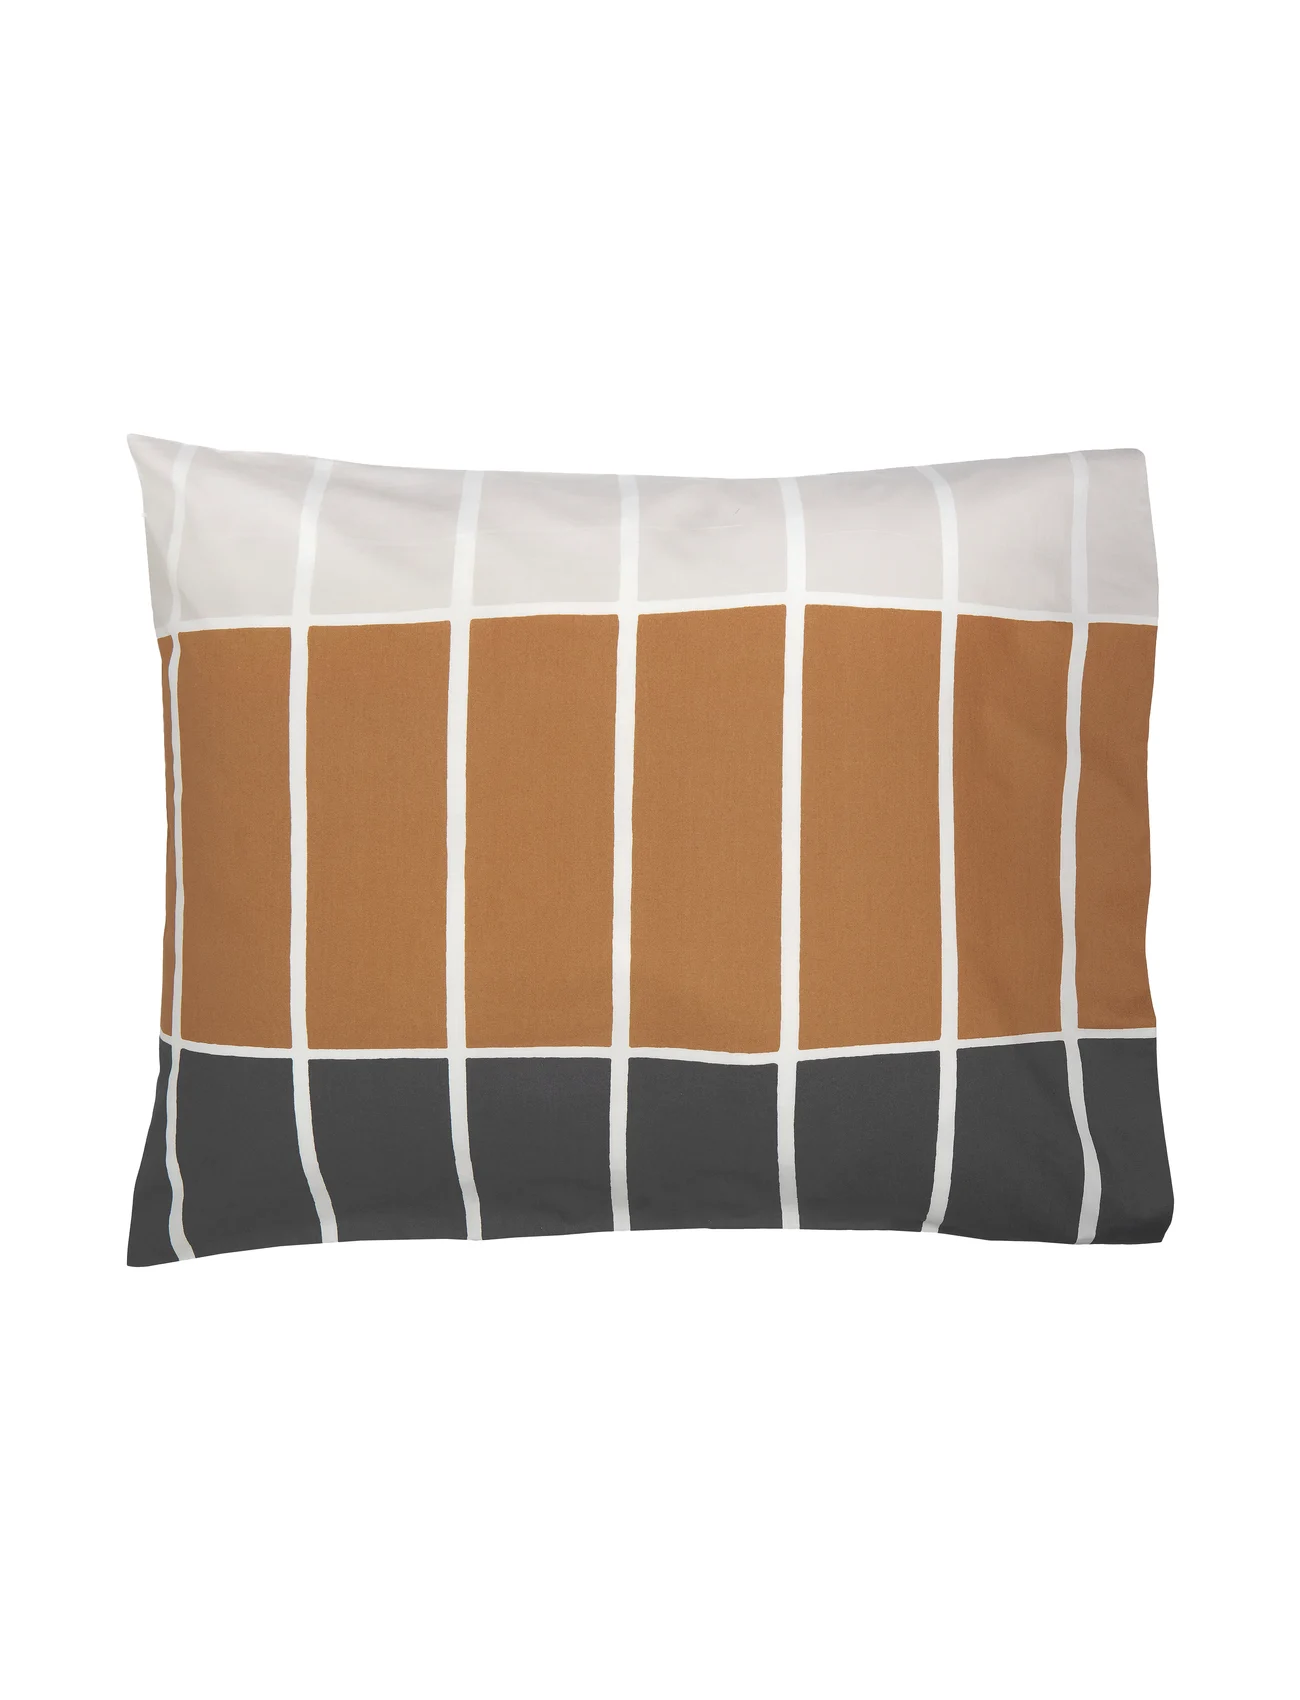 Marimekko Home - TIILISKIVI Pillow Case 50X60 CM - laagste prijzen - dark brown, beige, charcoal - 0